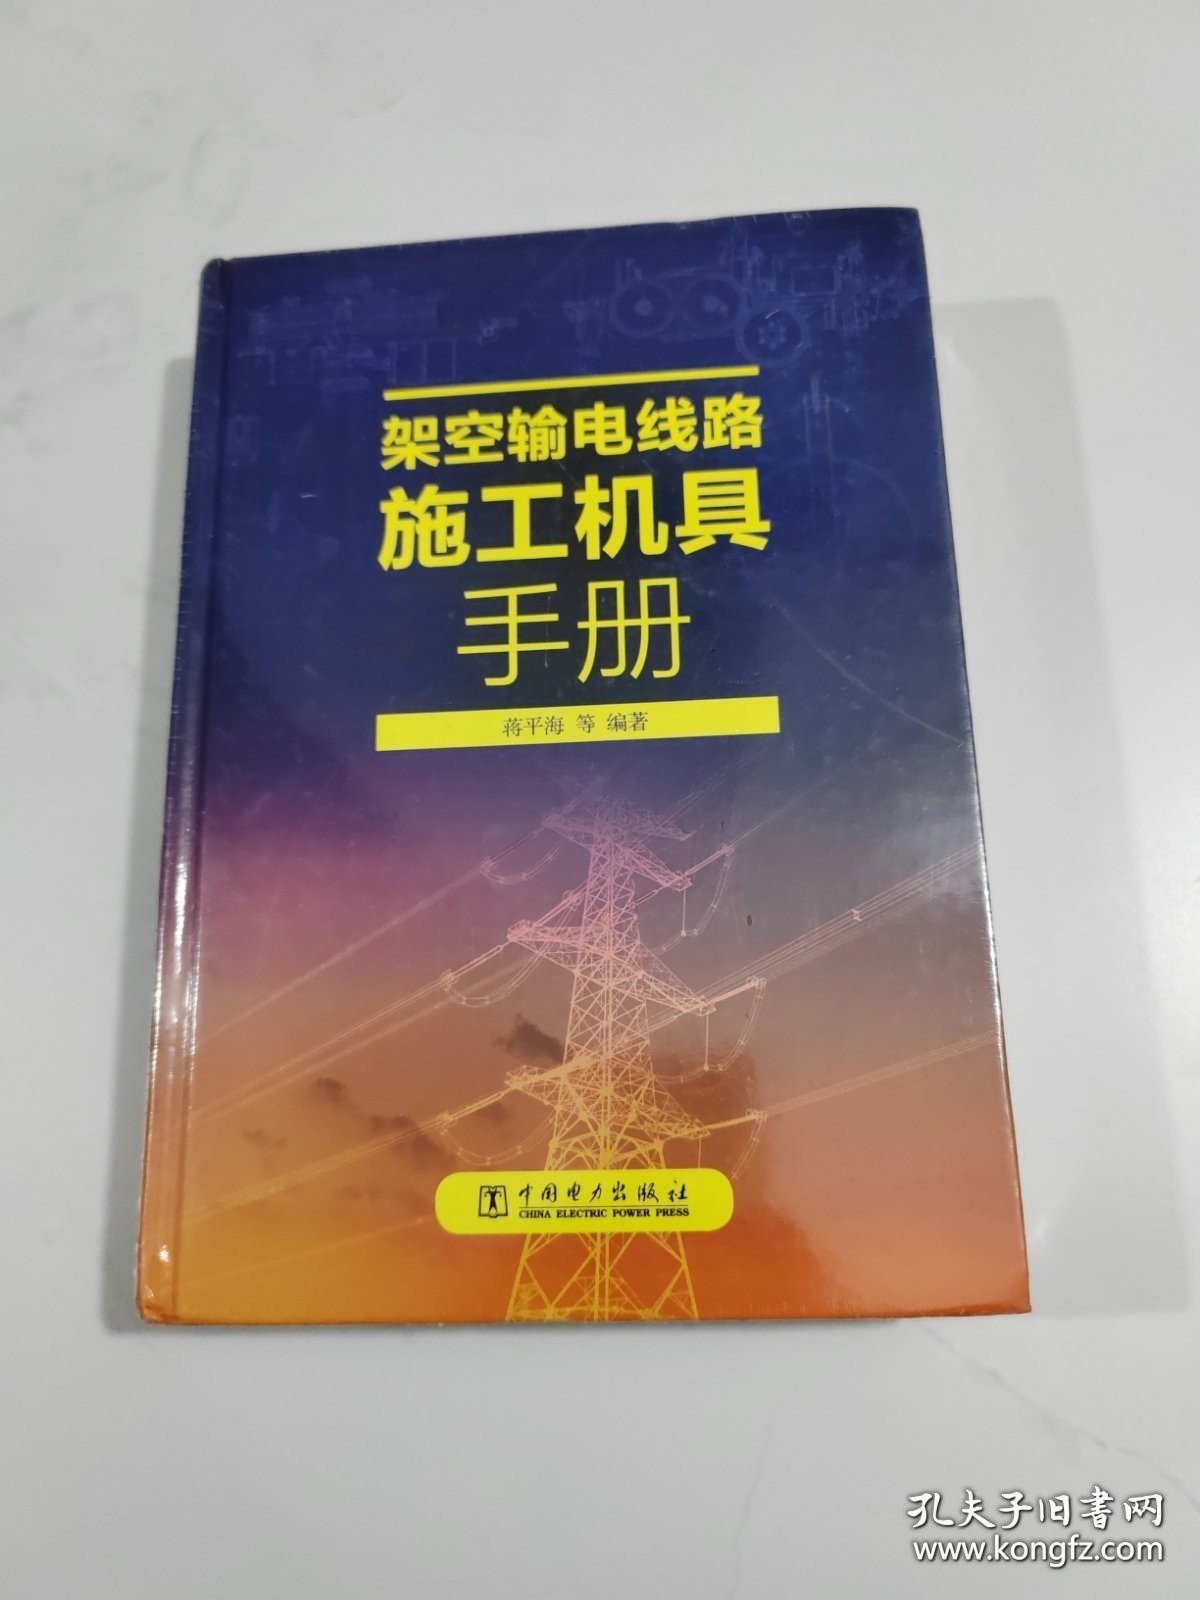 架空输电线路施工机具手册【全新未开封】